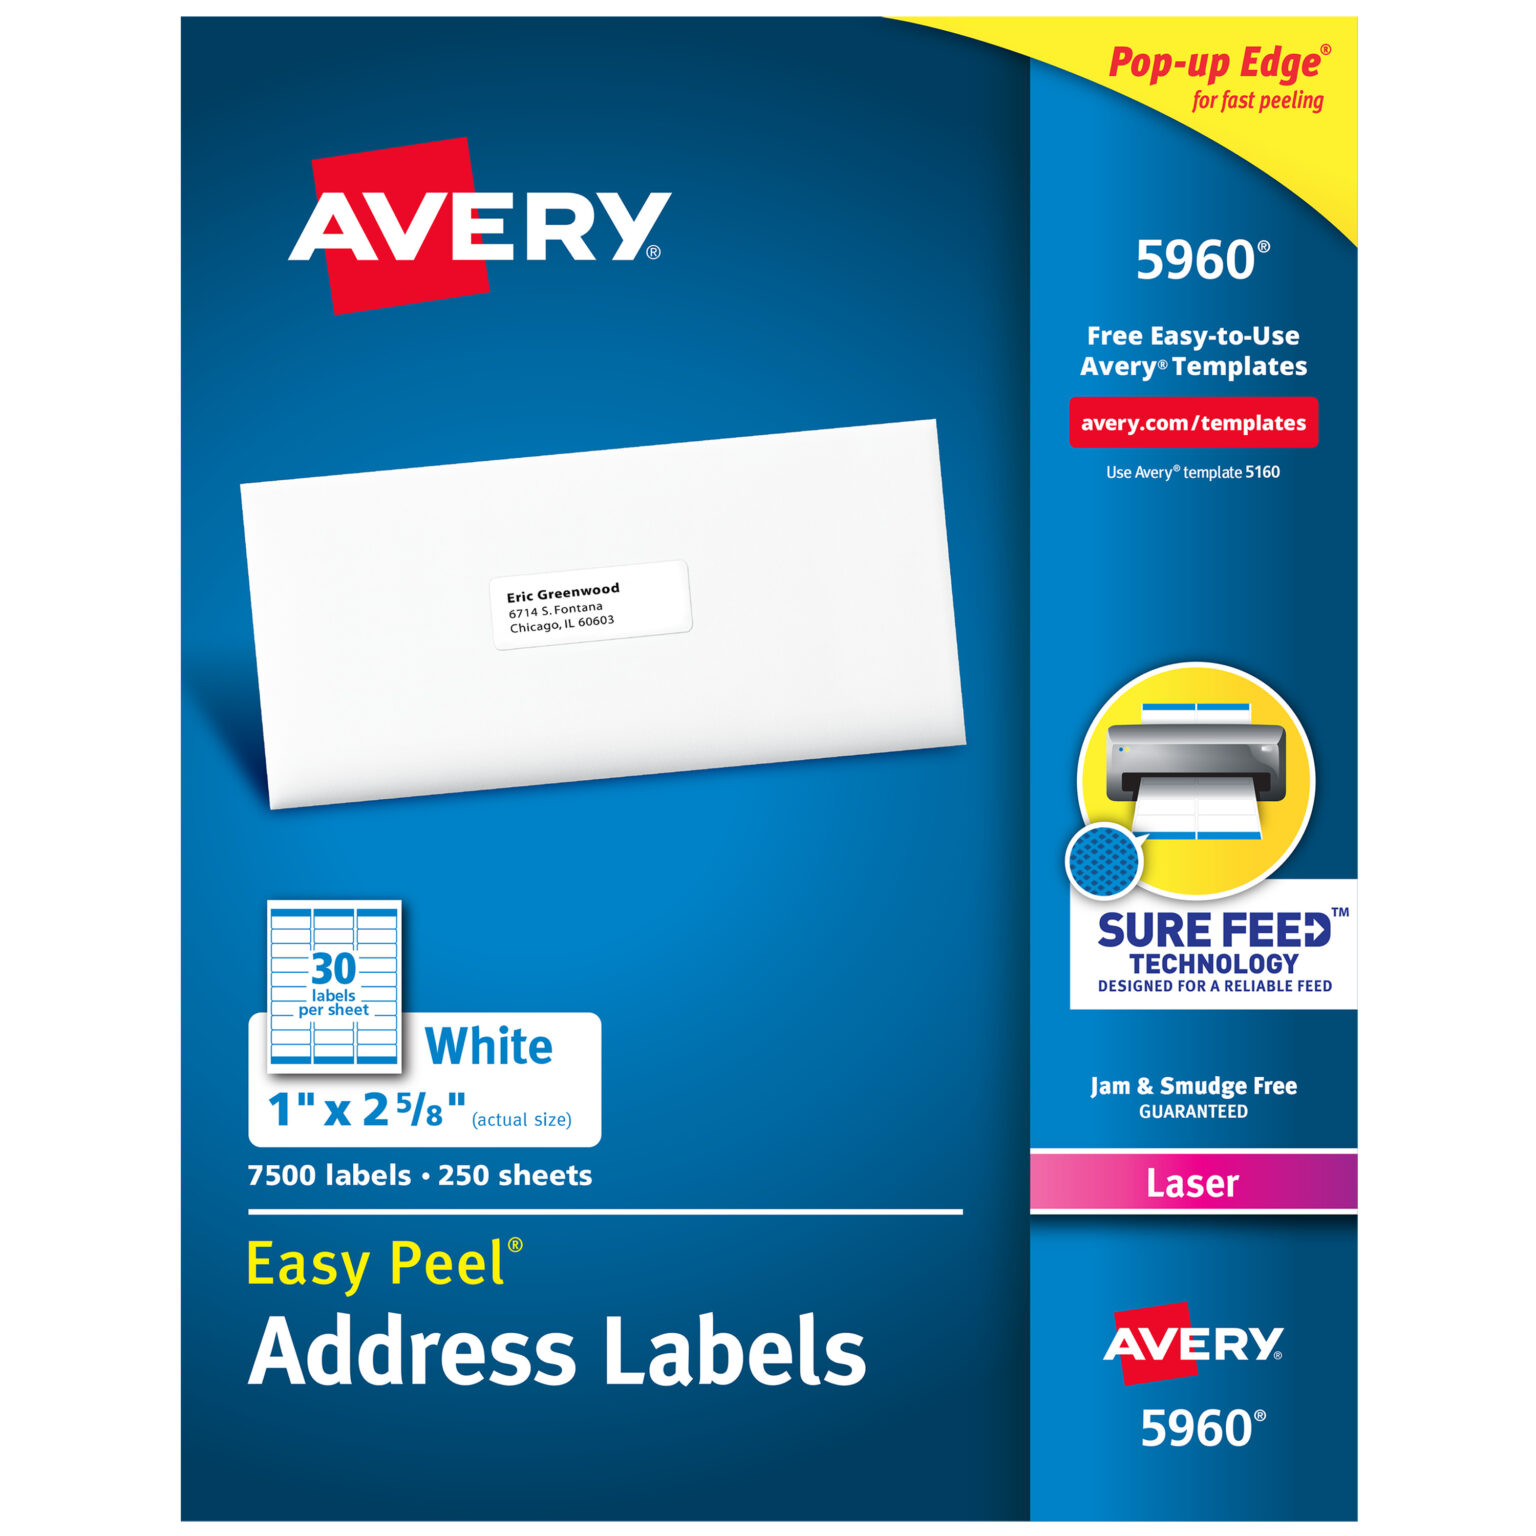 avery-5263-templates